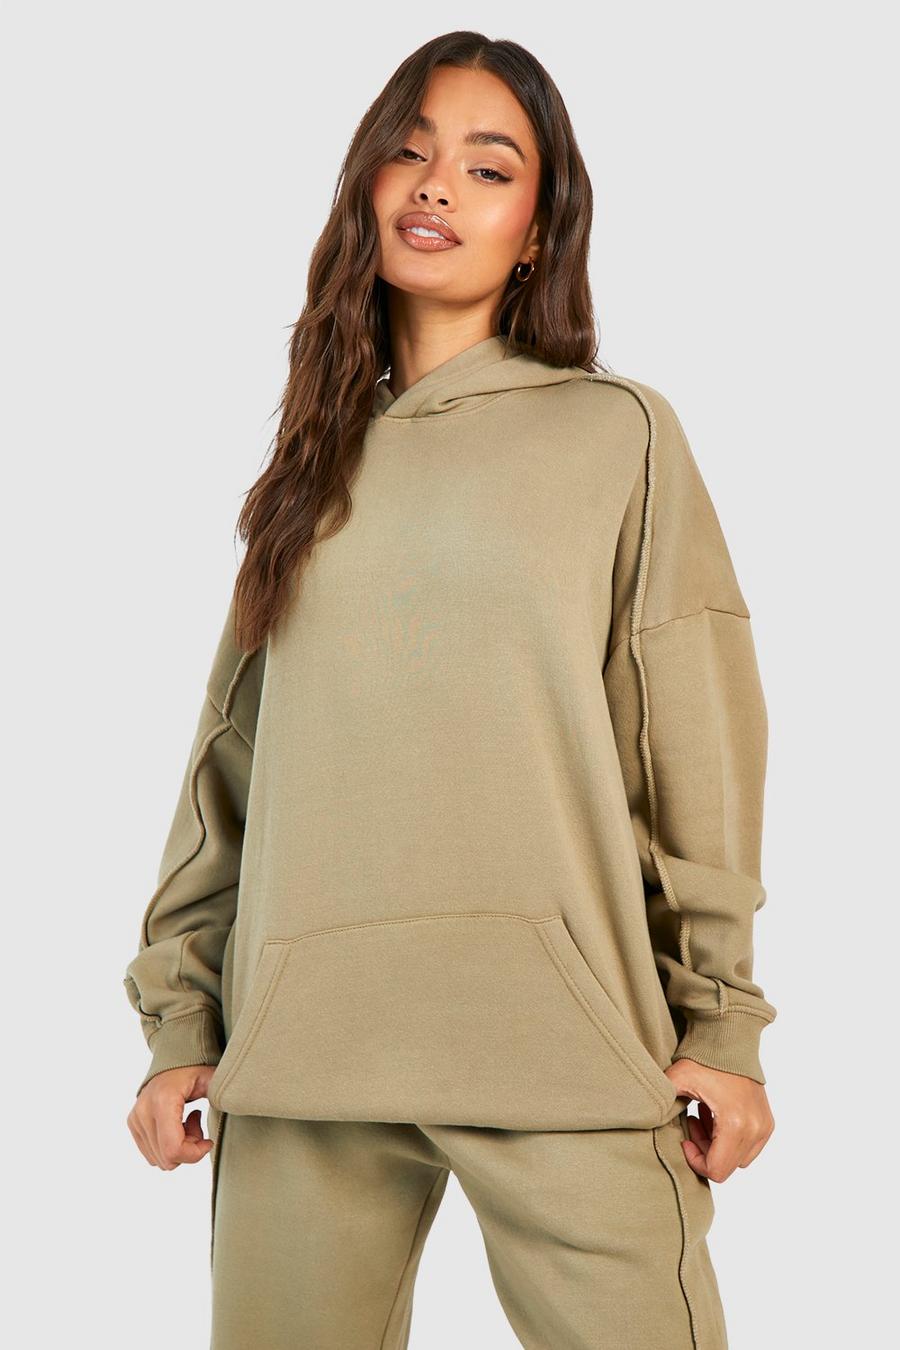 Women's Hoodies & Sweatshirts | Zip Up Hoodies | boohoo UK